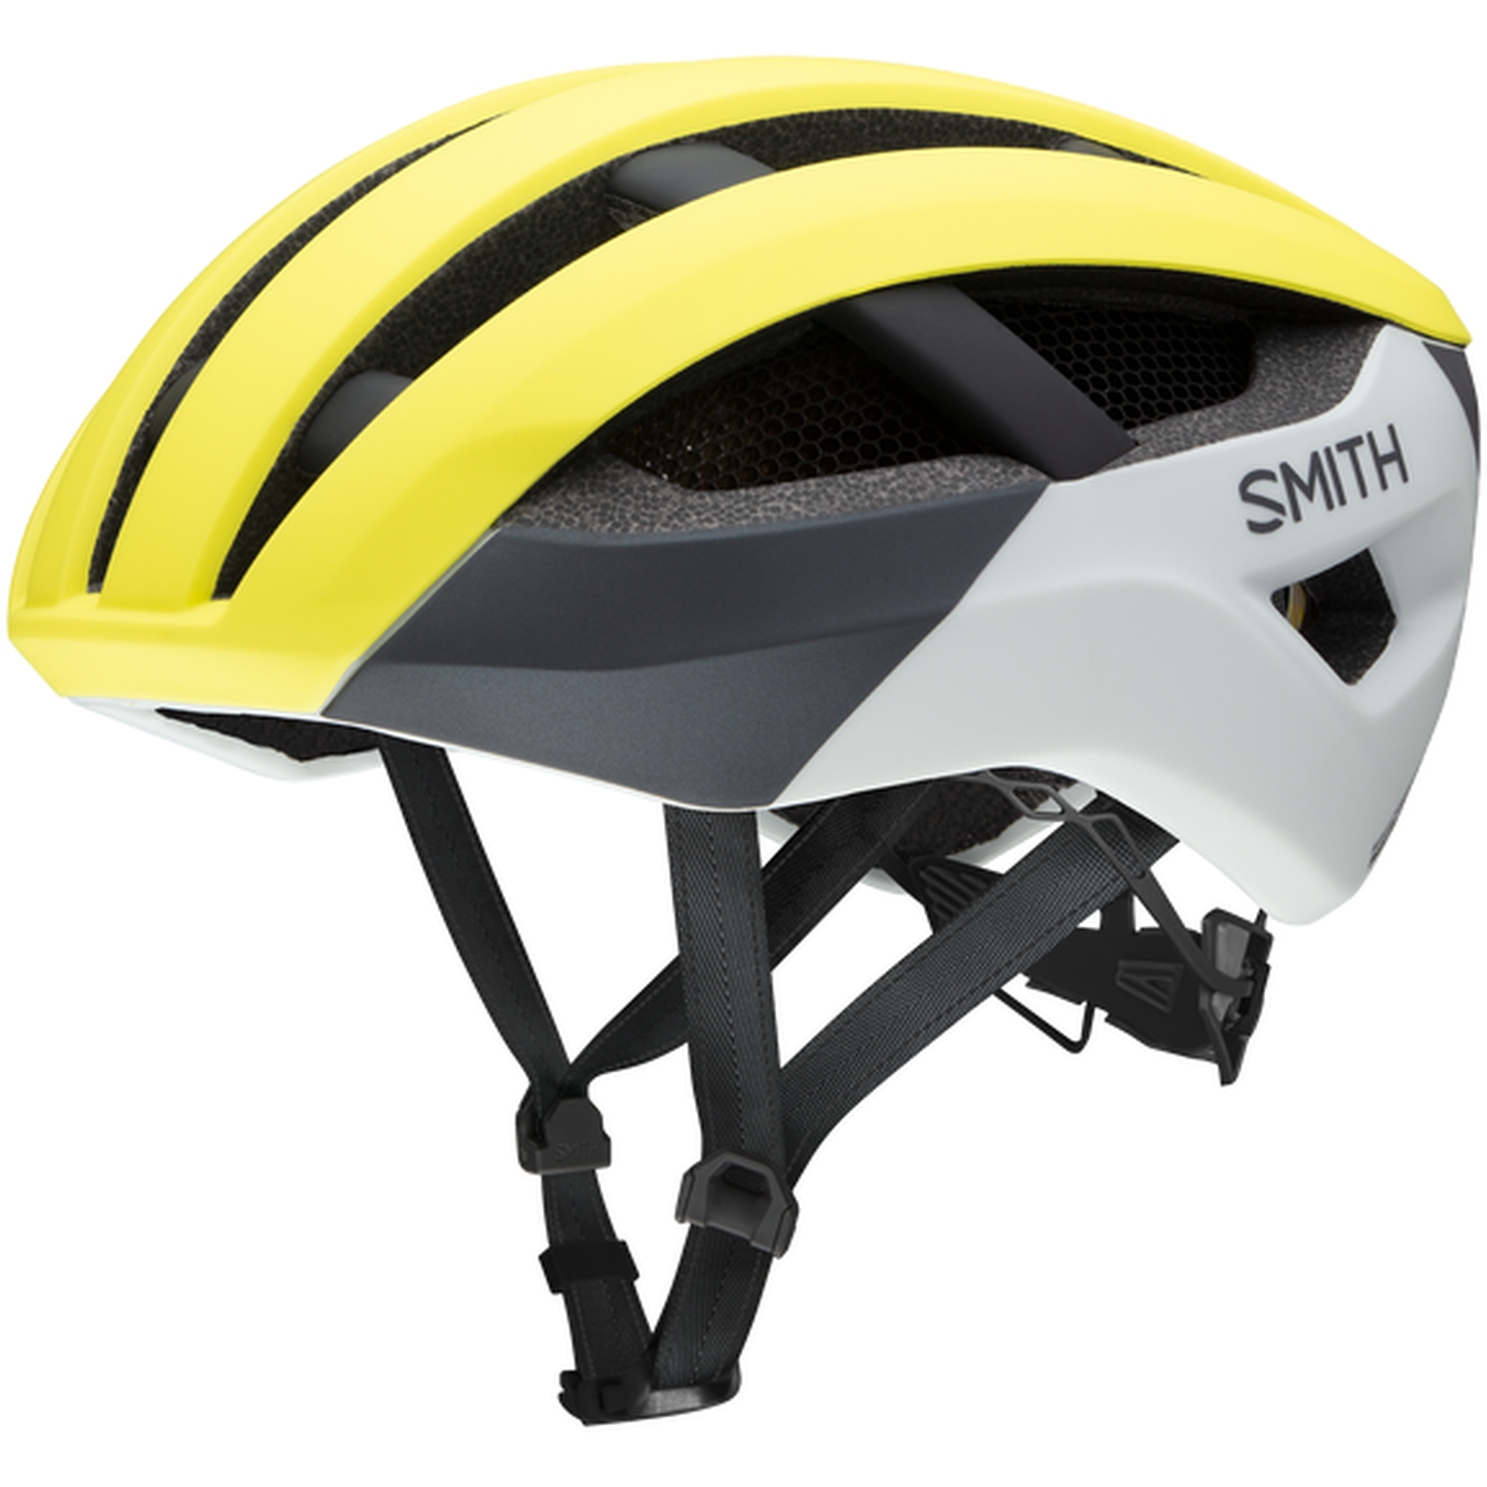 Produktbild von Smith Network MIPS Helm - Matte Neon Yellow Viz